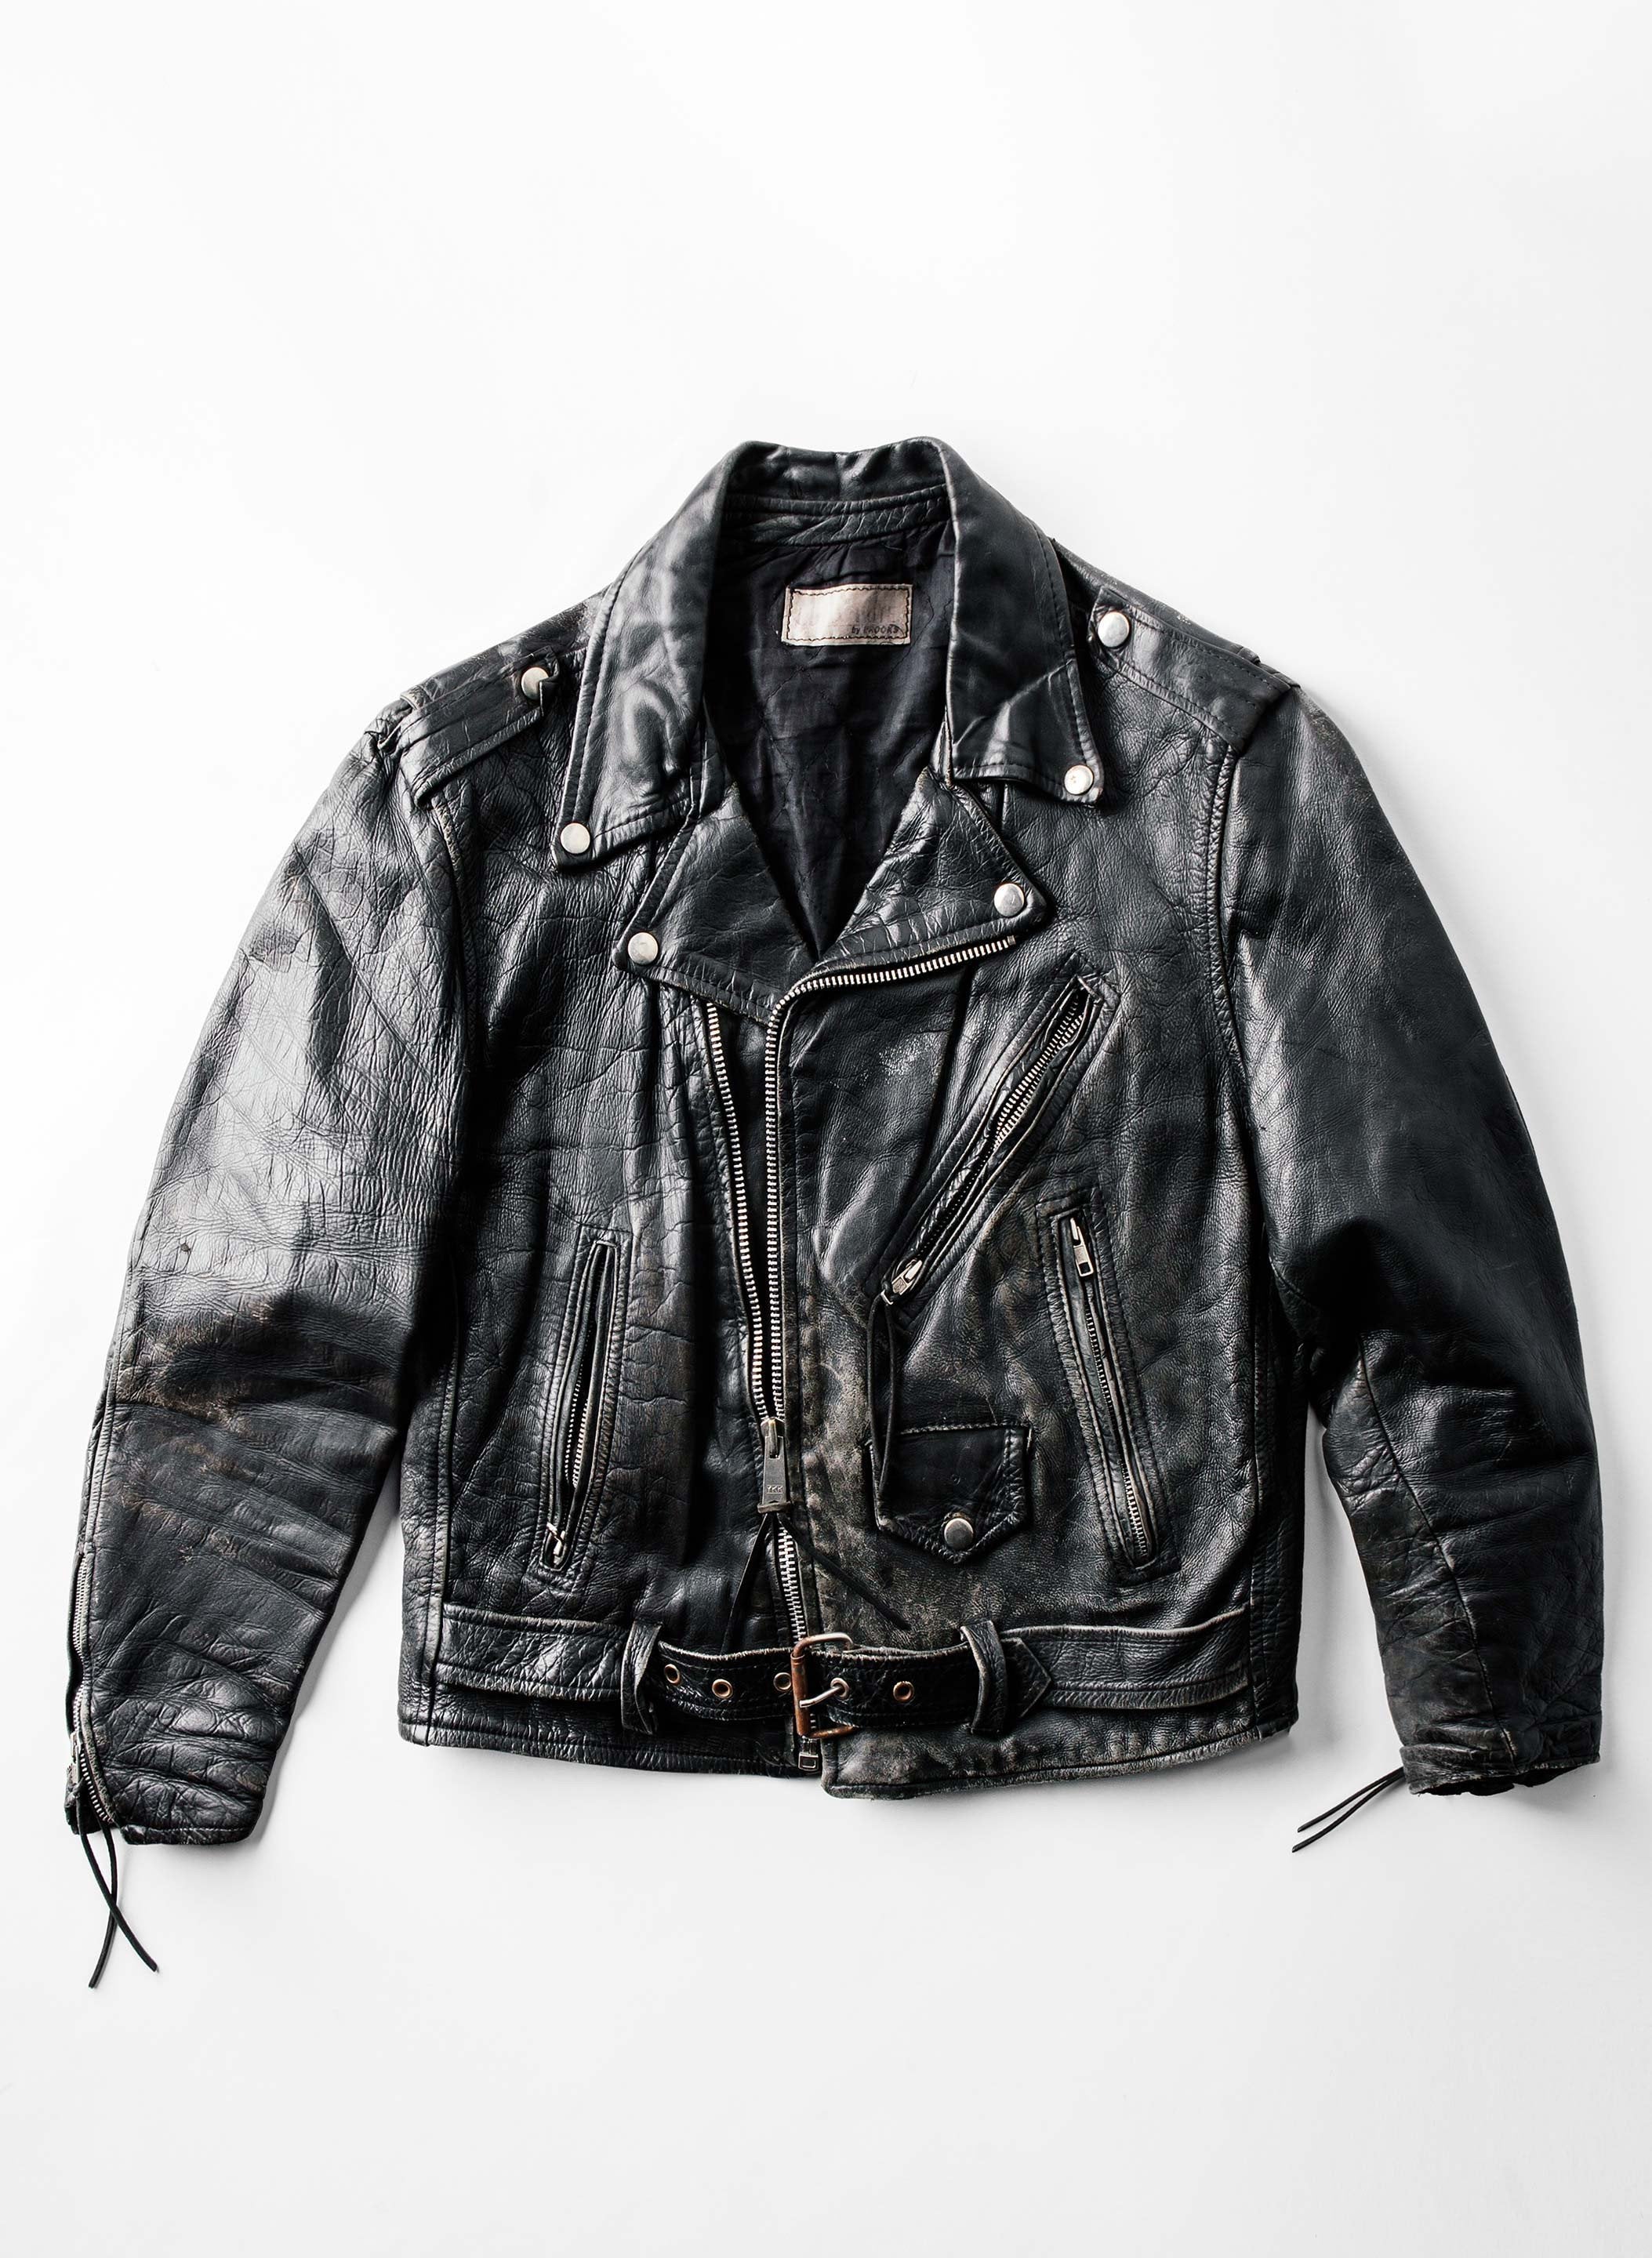 vintage brooks leather jacket